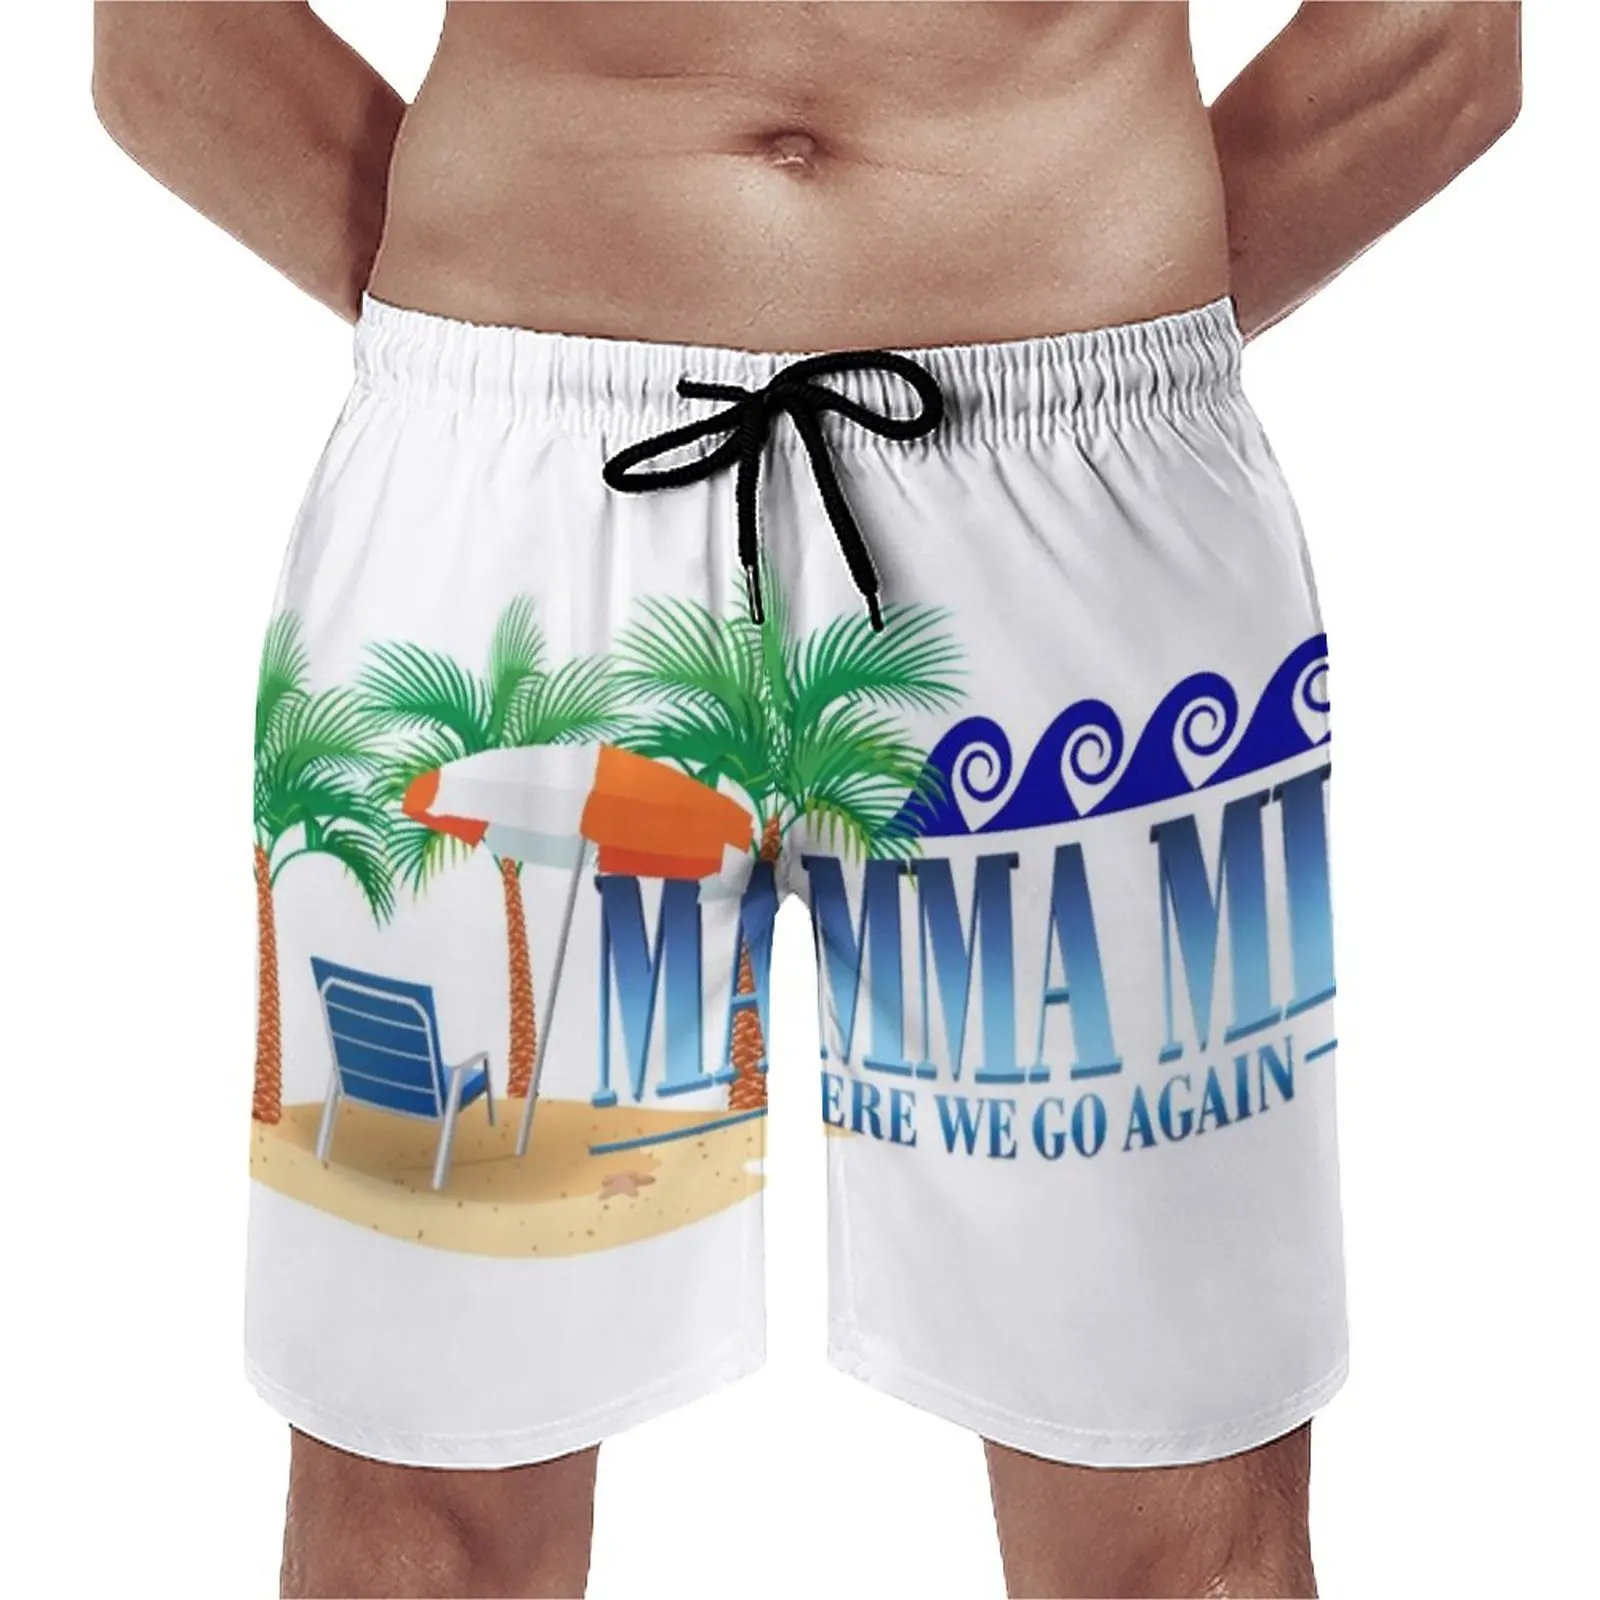 

Пляжные шорты MOM Mia, классические короткие штаны для плавания, Мерил Стреп, Аманда, сефрид, Колин, Firth, мужские дизайнерские модные плавки, под...